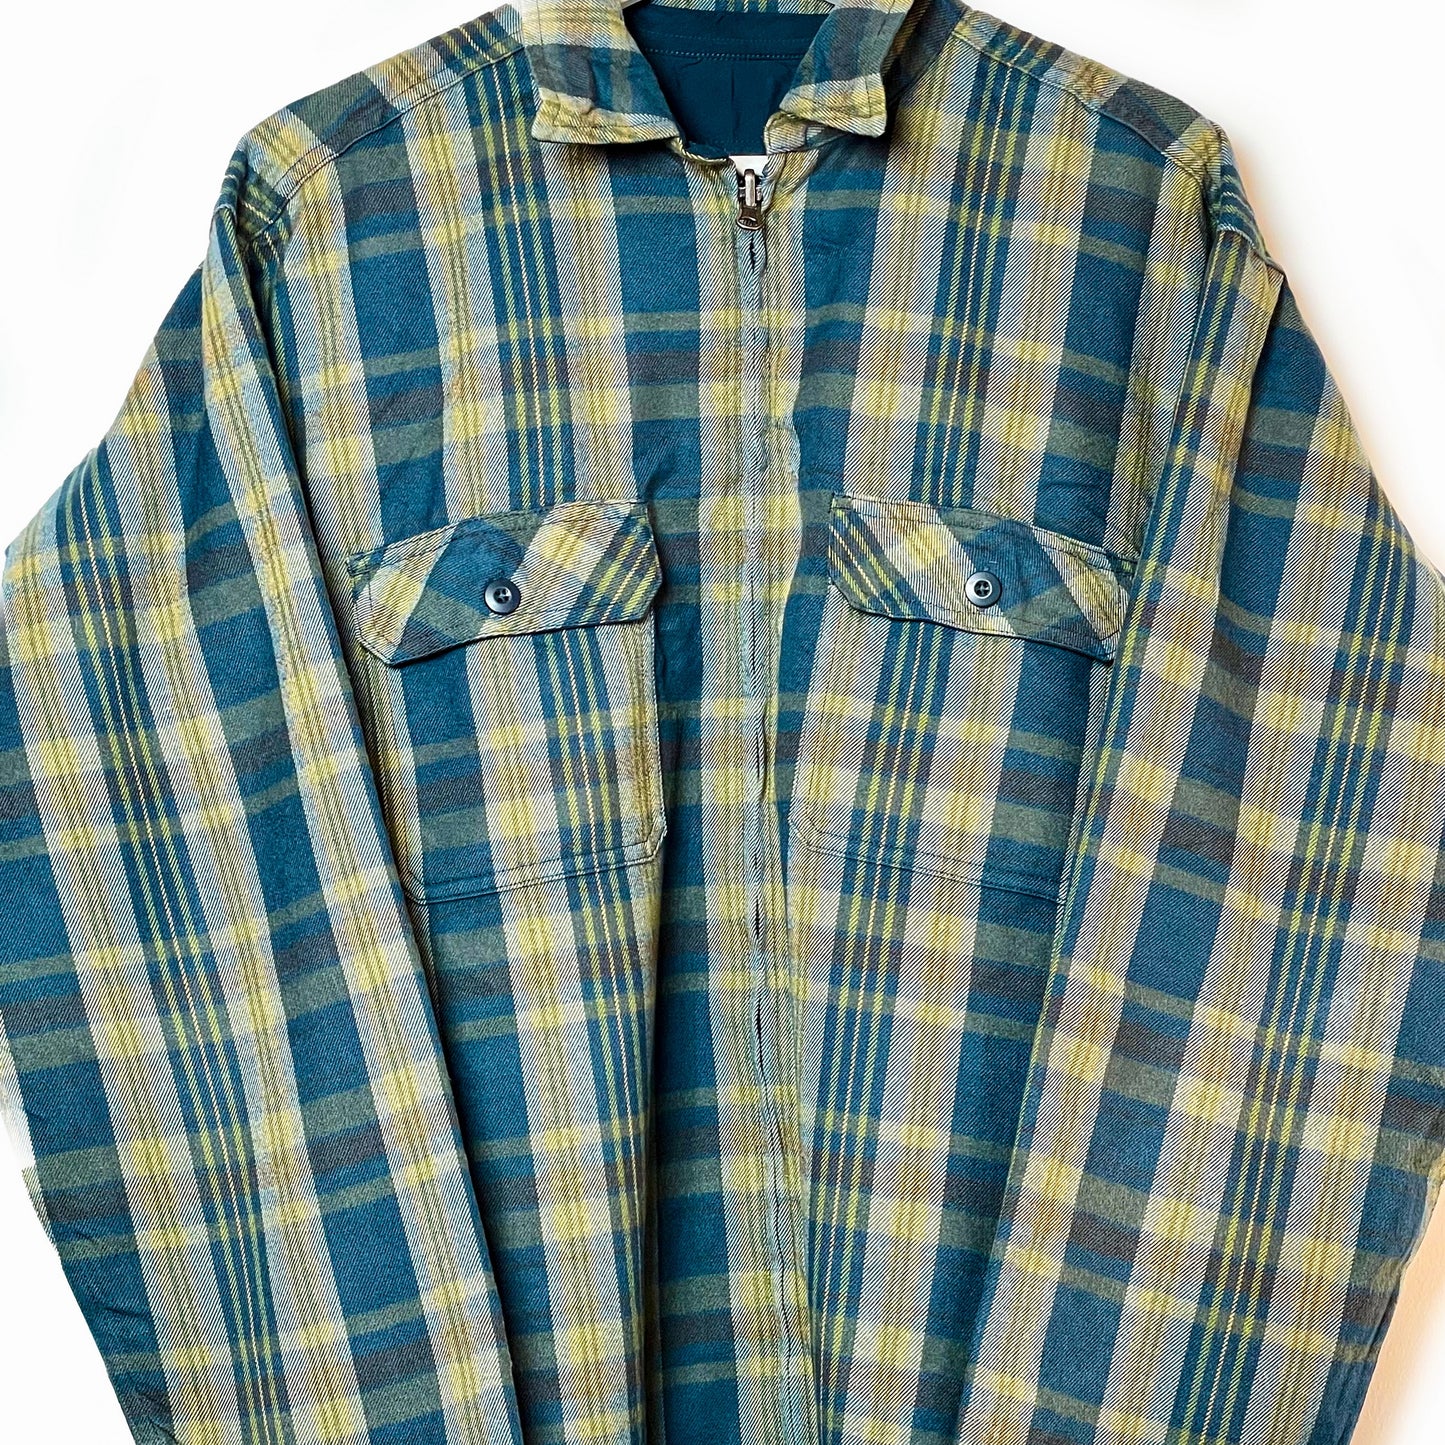 Patagonia Reversible Jacket Men Khaki/Blau-XL